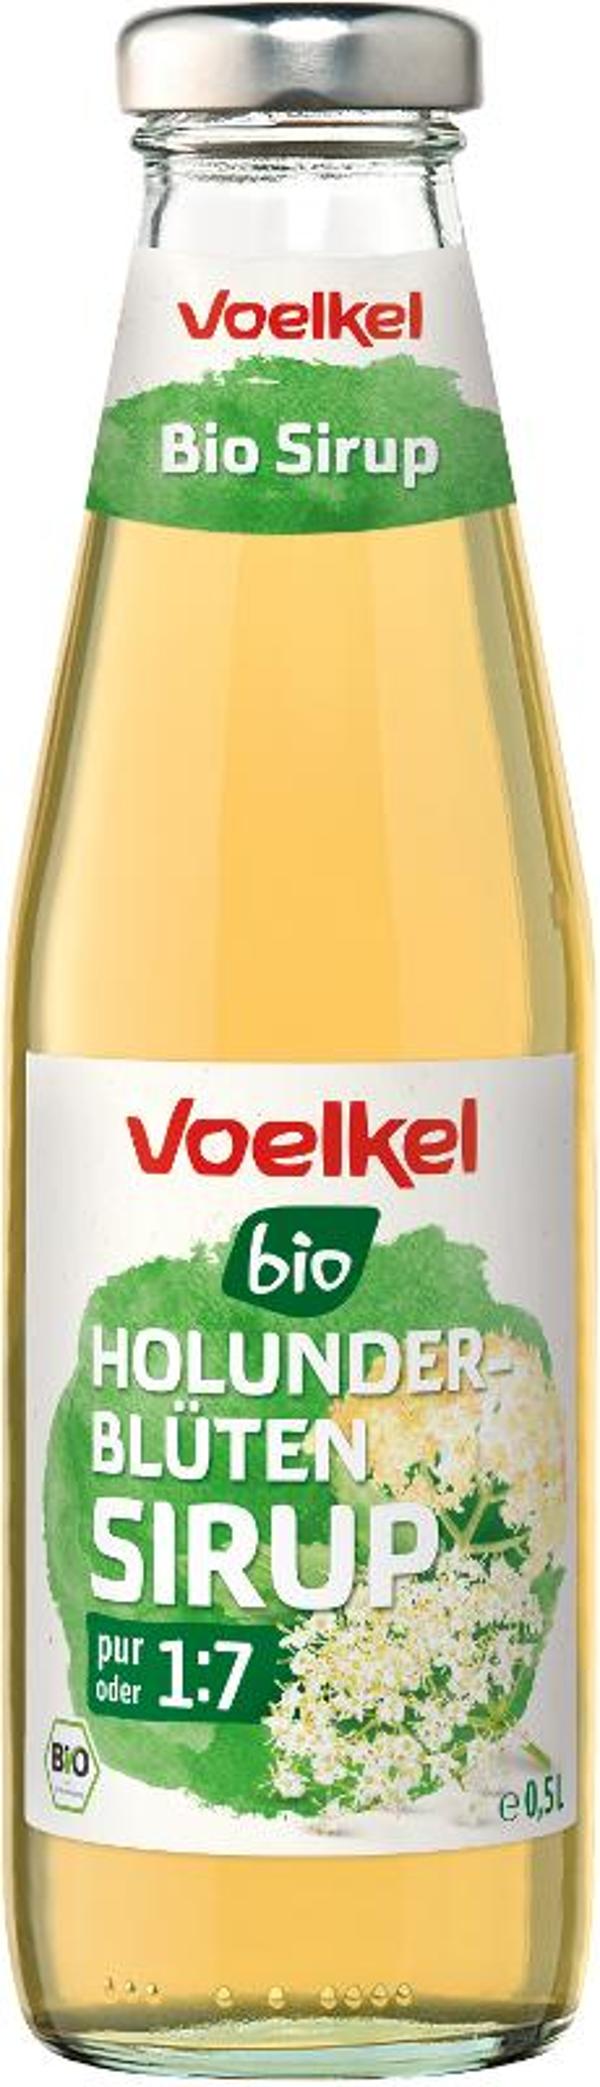 Produktfoto zu Holunderblüten Sirup von Voelkel